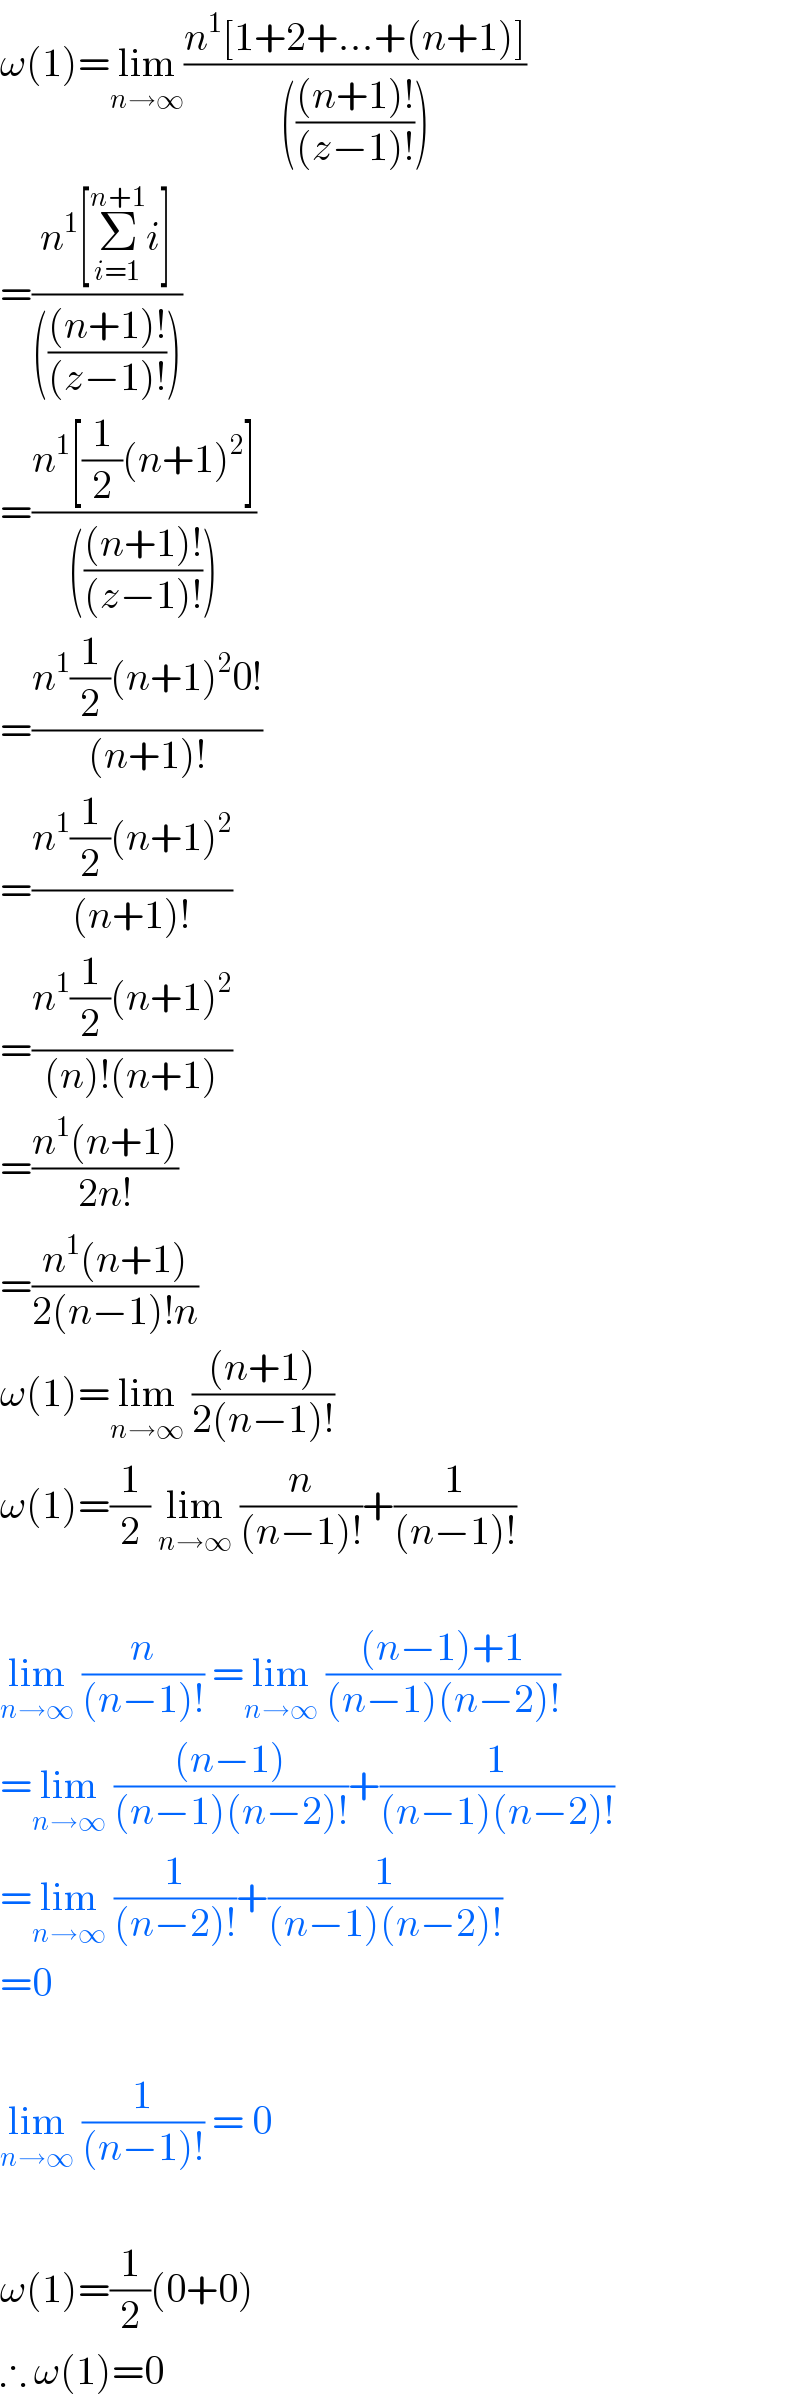 ω(1)=lim_(n→∞) ((n^1 [1+2+...+(n+1)])/(((((n+1)!)/((z−1)!)))))  =((n^1 [Σ_(i=1) ^(n+1) i])/(((((n+1)!)/((z−1)!)))))  =((n^1 [(1/2)(n+1)^2 ])/(((((n+1)!)/((z−1)!)))))  =((n^1 (1/2)(n+1)^2 0!)/((n+1)!))  =((n^1 (1/2)(n+1)^2 )/((n+1)!))  =((n^1 (1/2)(n+1)^2 )/((n)!(n+1)))  =((n^1 (n+1))/(2n!))  =((n^1 (n+1))/(2(n−1)!n))  ω(1)=lim_(n→∞)  (((n+1))/(2(n−1)!))  ω(1)=(1/2) lim_(n→∞)  (n/((n−1)!))+(1/((n−1)!))    lim_(n→∞)  (n/((n−1)!)) =lim_(n→∞)  (((n−1)+1)/((n−1)(n−2)!))  =lim_(n→∞)  (((n−1))/((n−1)(n−2)!))+(1/((n−1)(n−2)!))  =lim_(n→∞)  (1/((n−2)!))+(1/((n−1)(n−2)!))  =0    lim_(n→∞)  (1/((n−1)!)) = 0    ω(1)=(1/2)(0+0)  ∴ ω(1)=0  